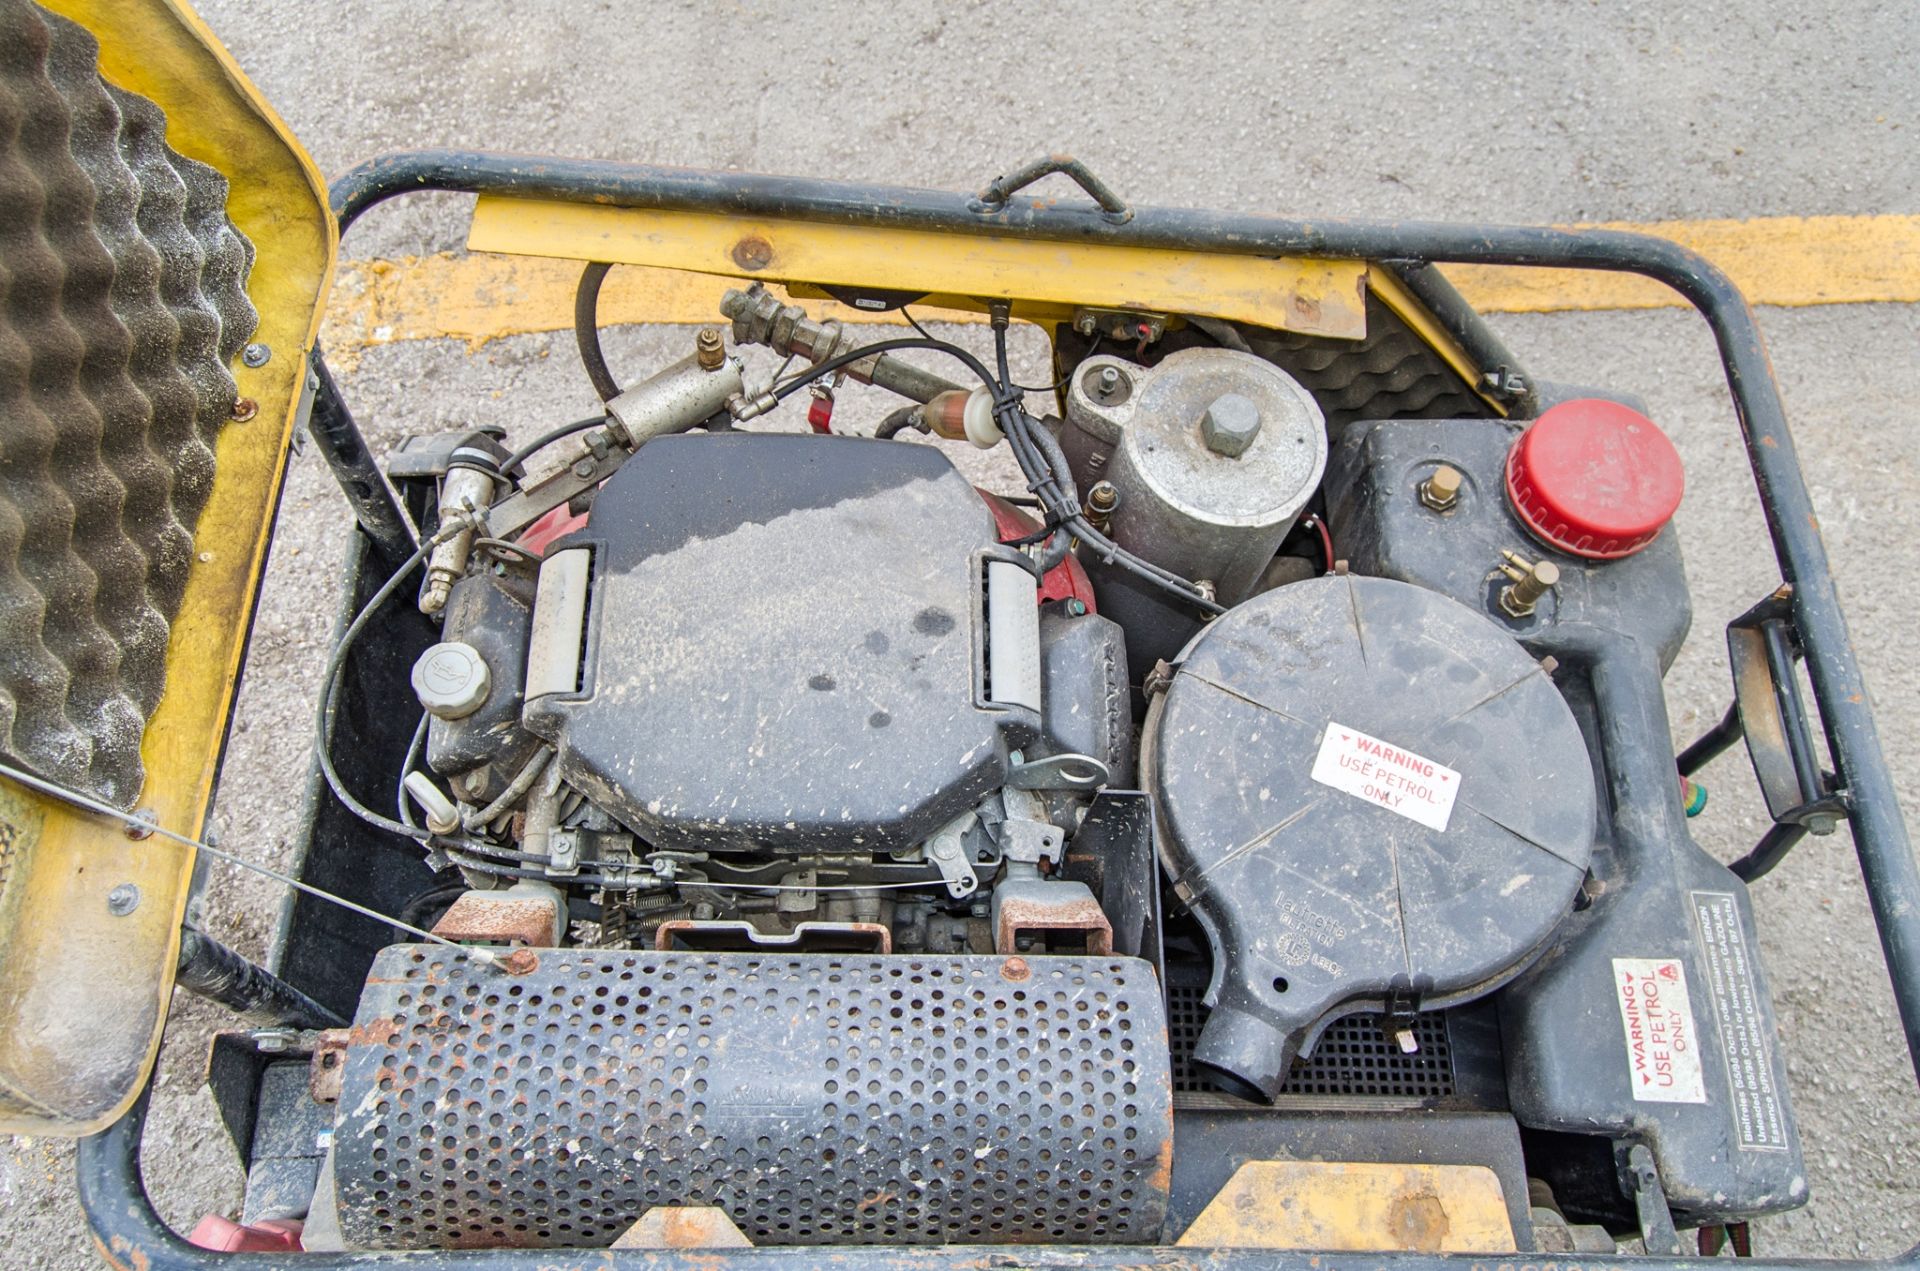 Compair C14 petrol driven air compressor A989879 - Image 3 of 3